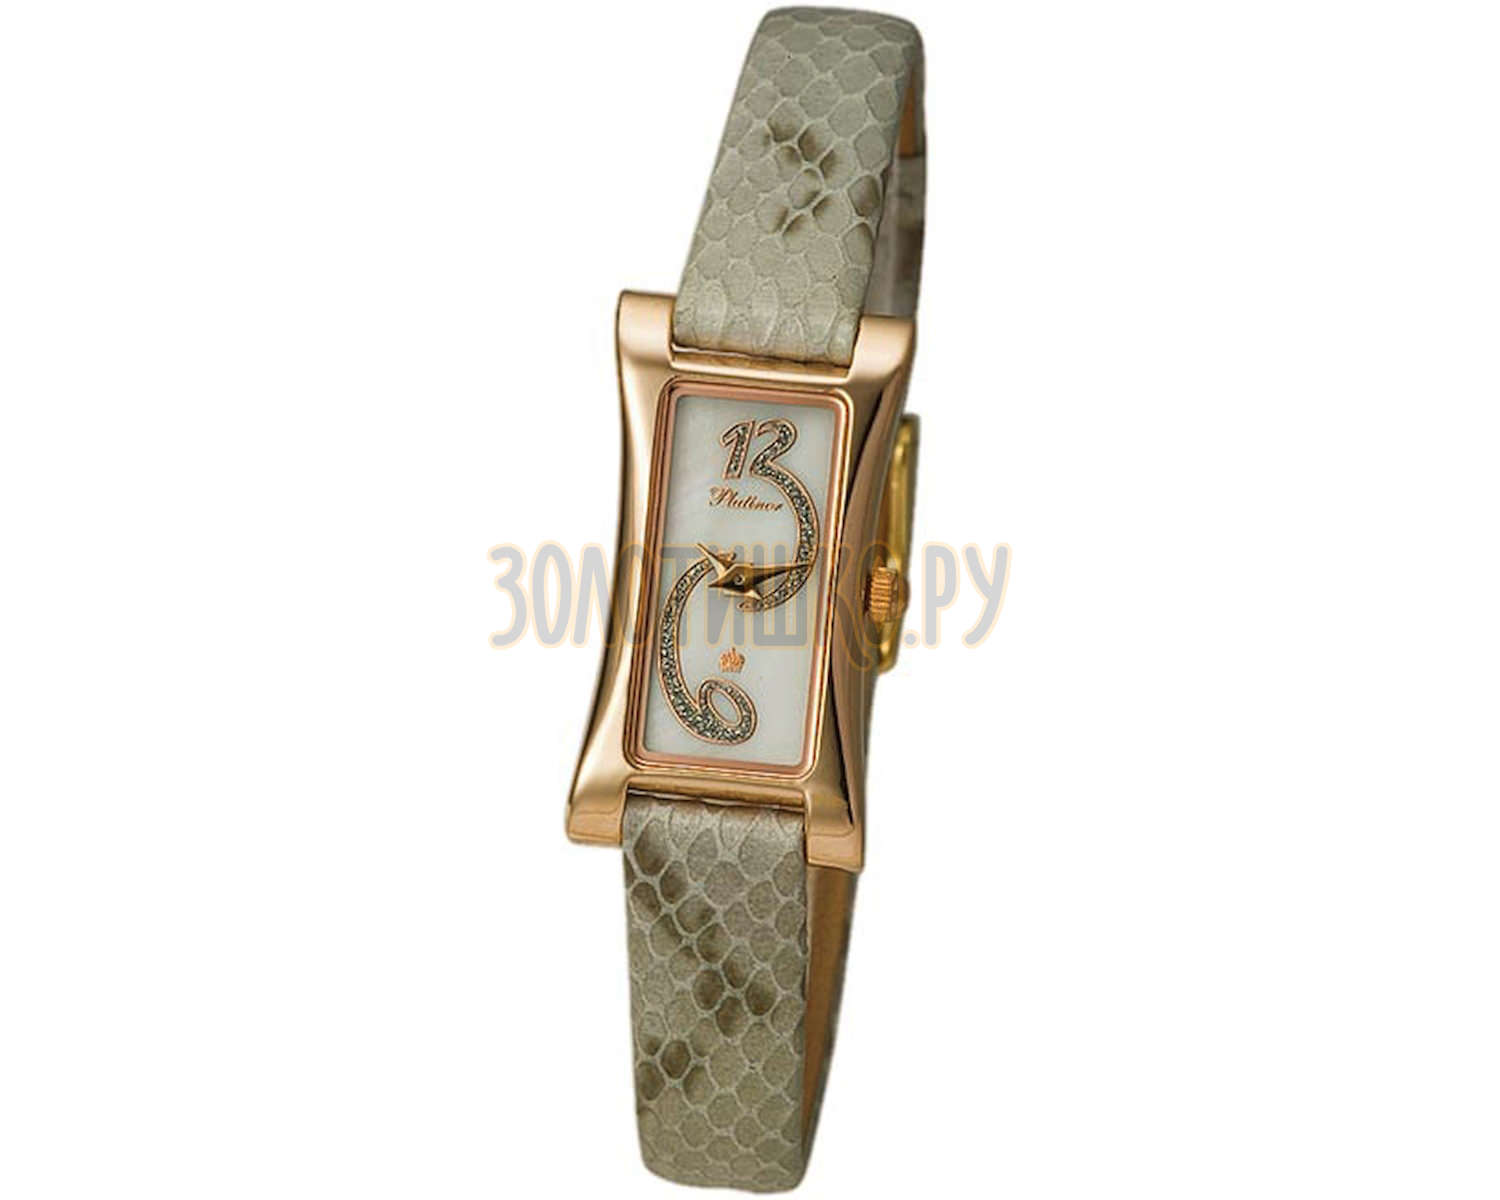 Каталог золотых часов с ценами женские. Наручные часы Platinor 91750.416. Элизабет часы Платинор. Часы золотые 585 Platinor. Часы Платинор Чайка золотые.